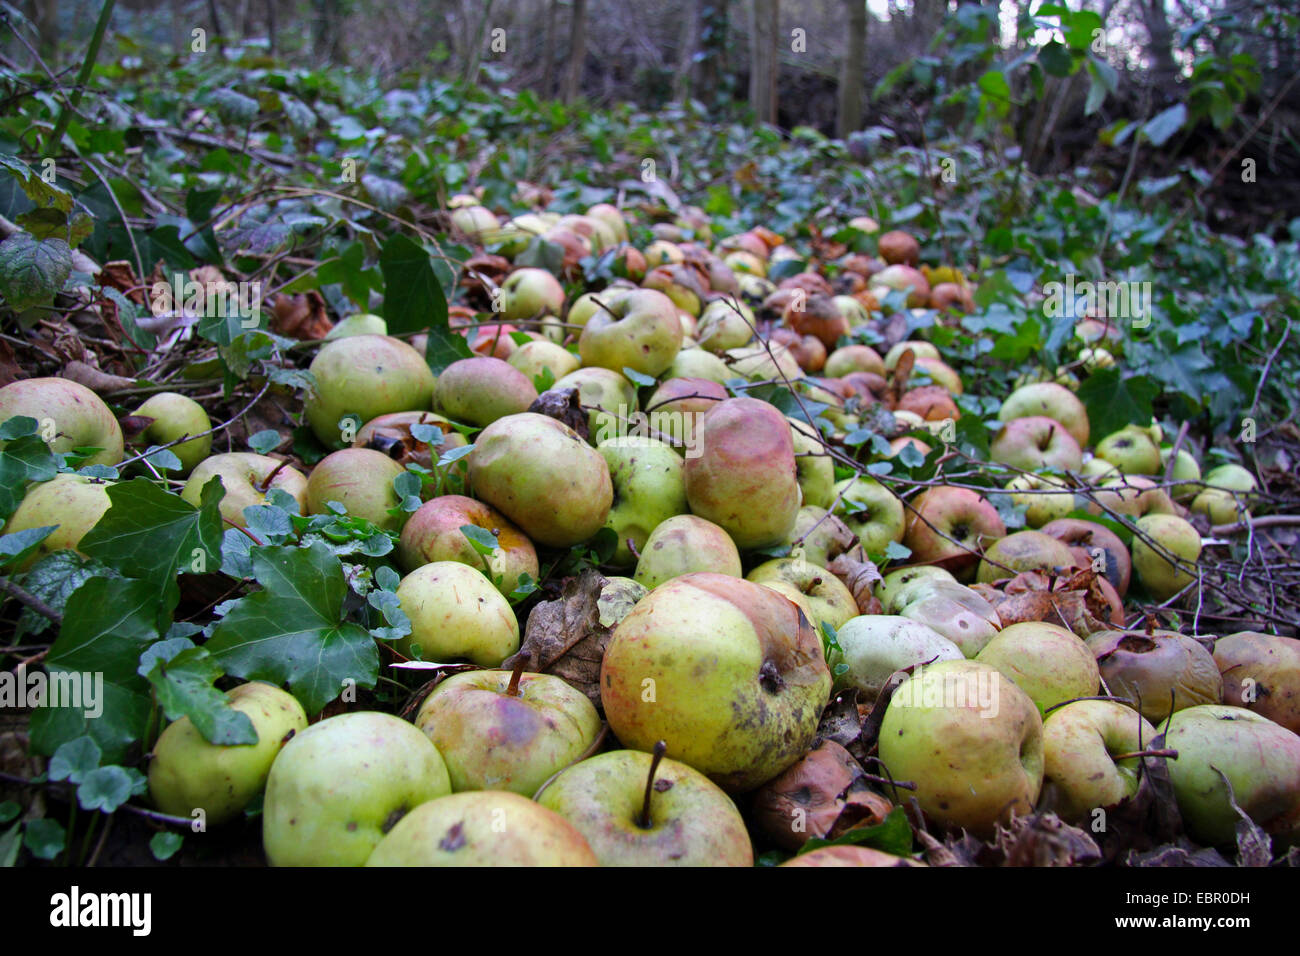 Apple (malus domestica), mele sul terreno per alimentare gli animali in una foresta in inverno, Germania Foto Stock